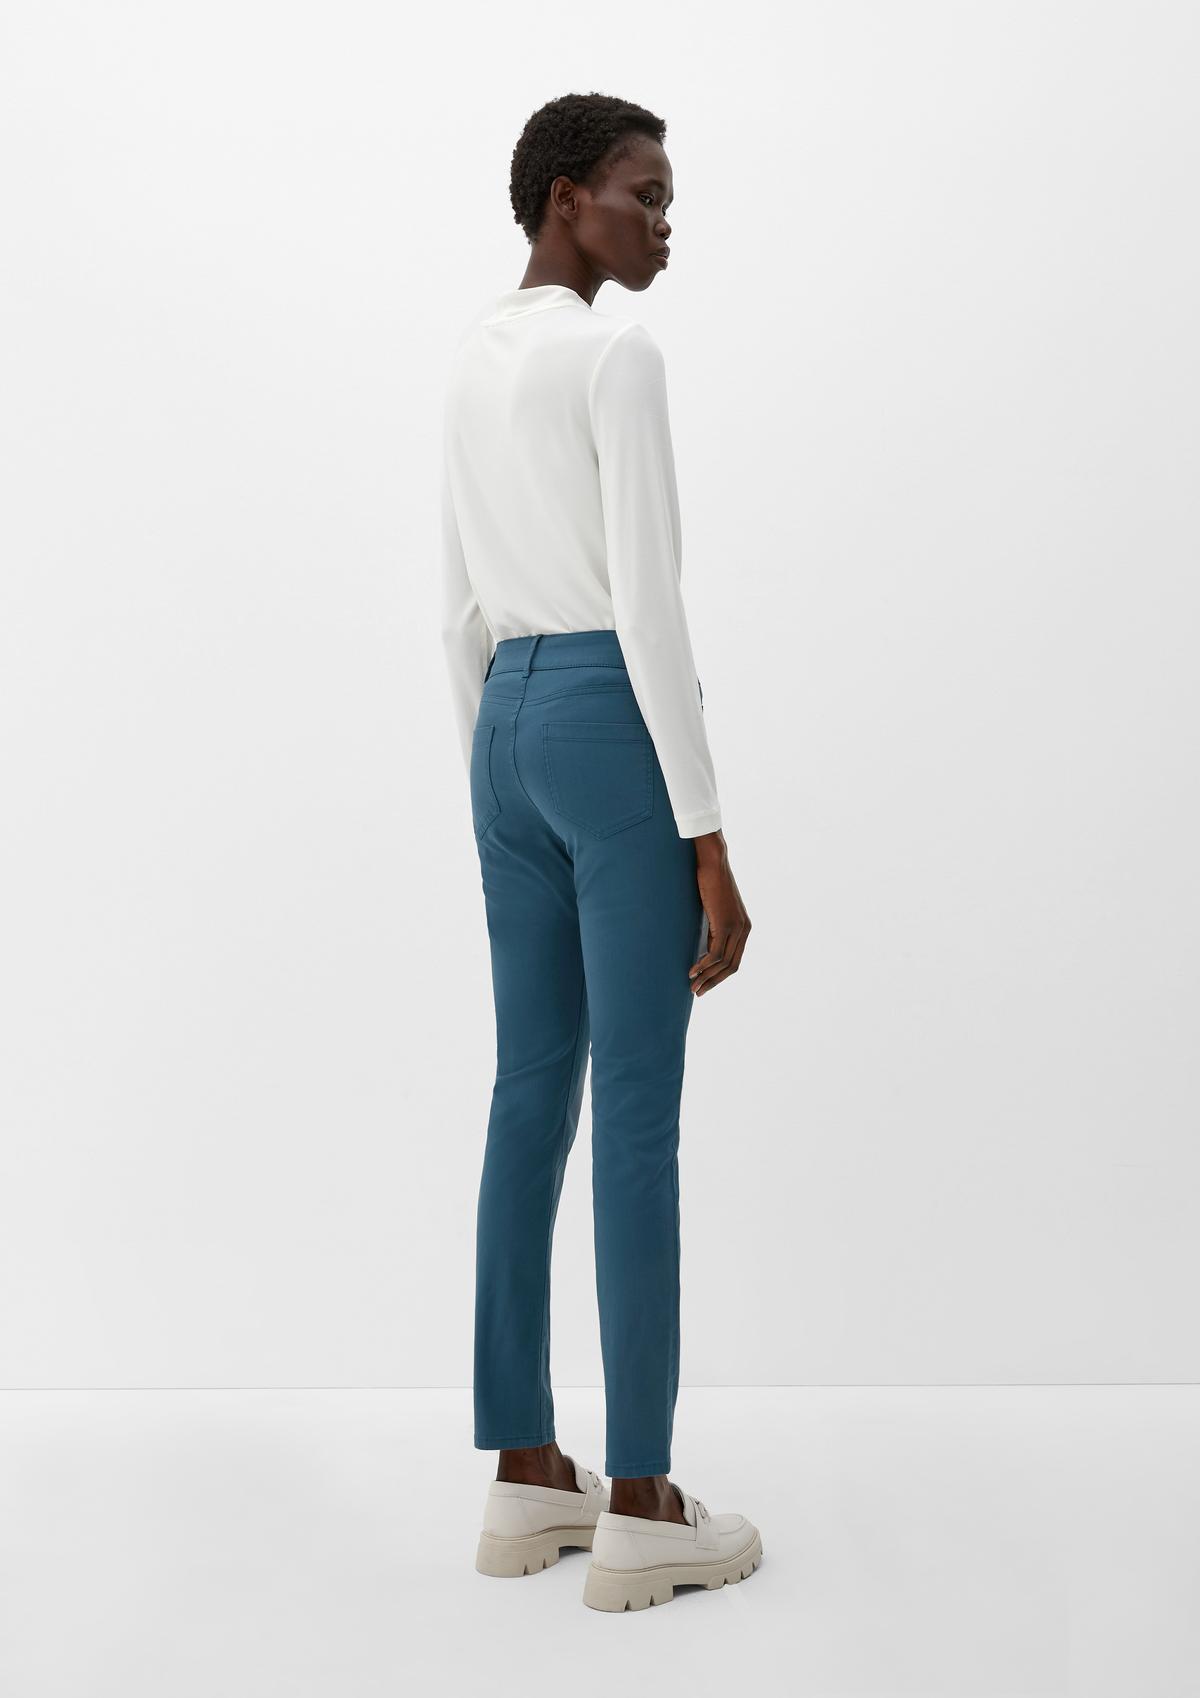 s.Oliver Sienna: ozke jeans hlače Slim Fit